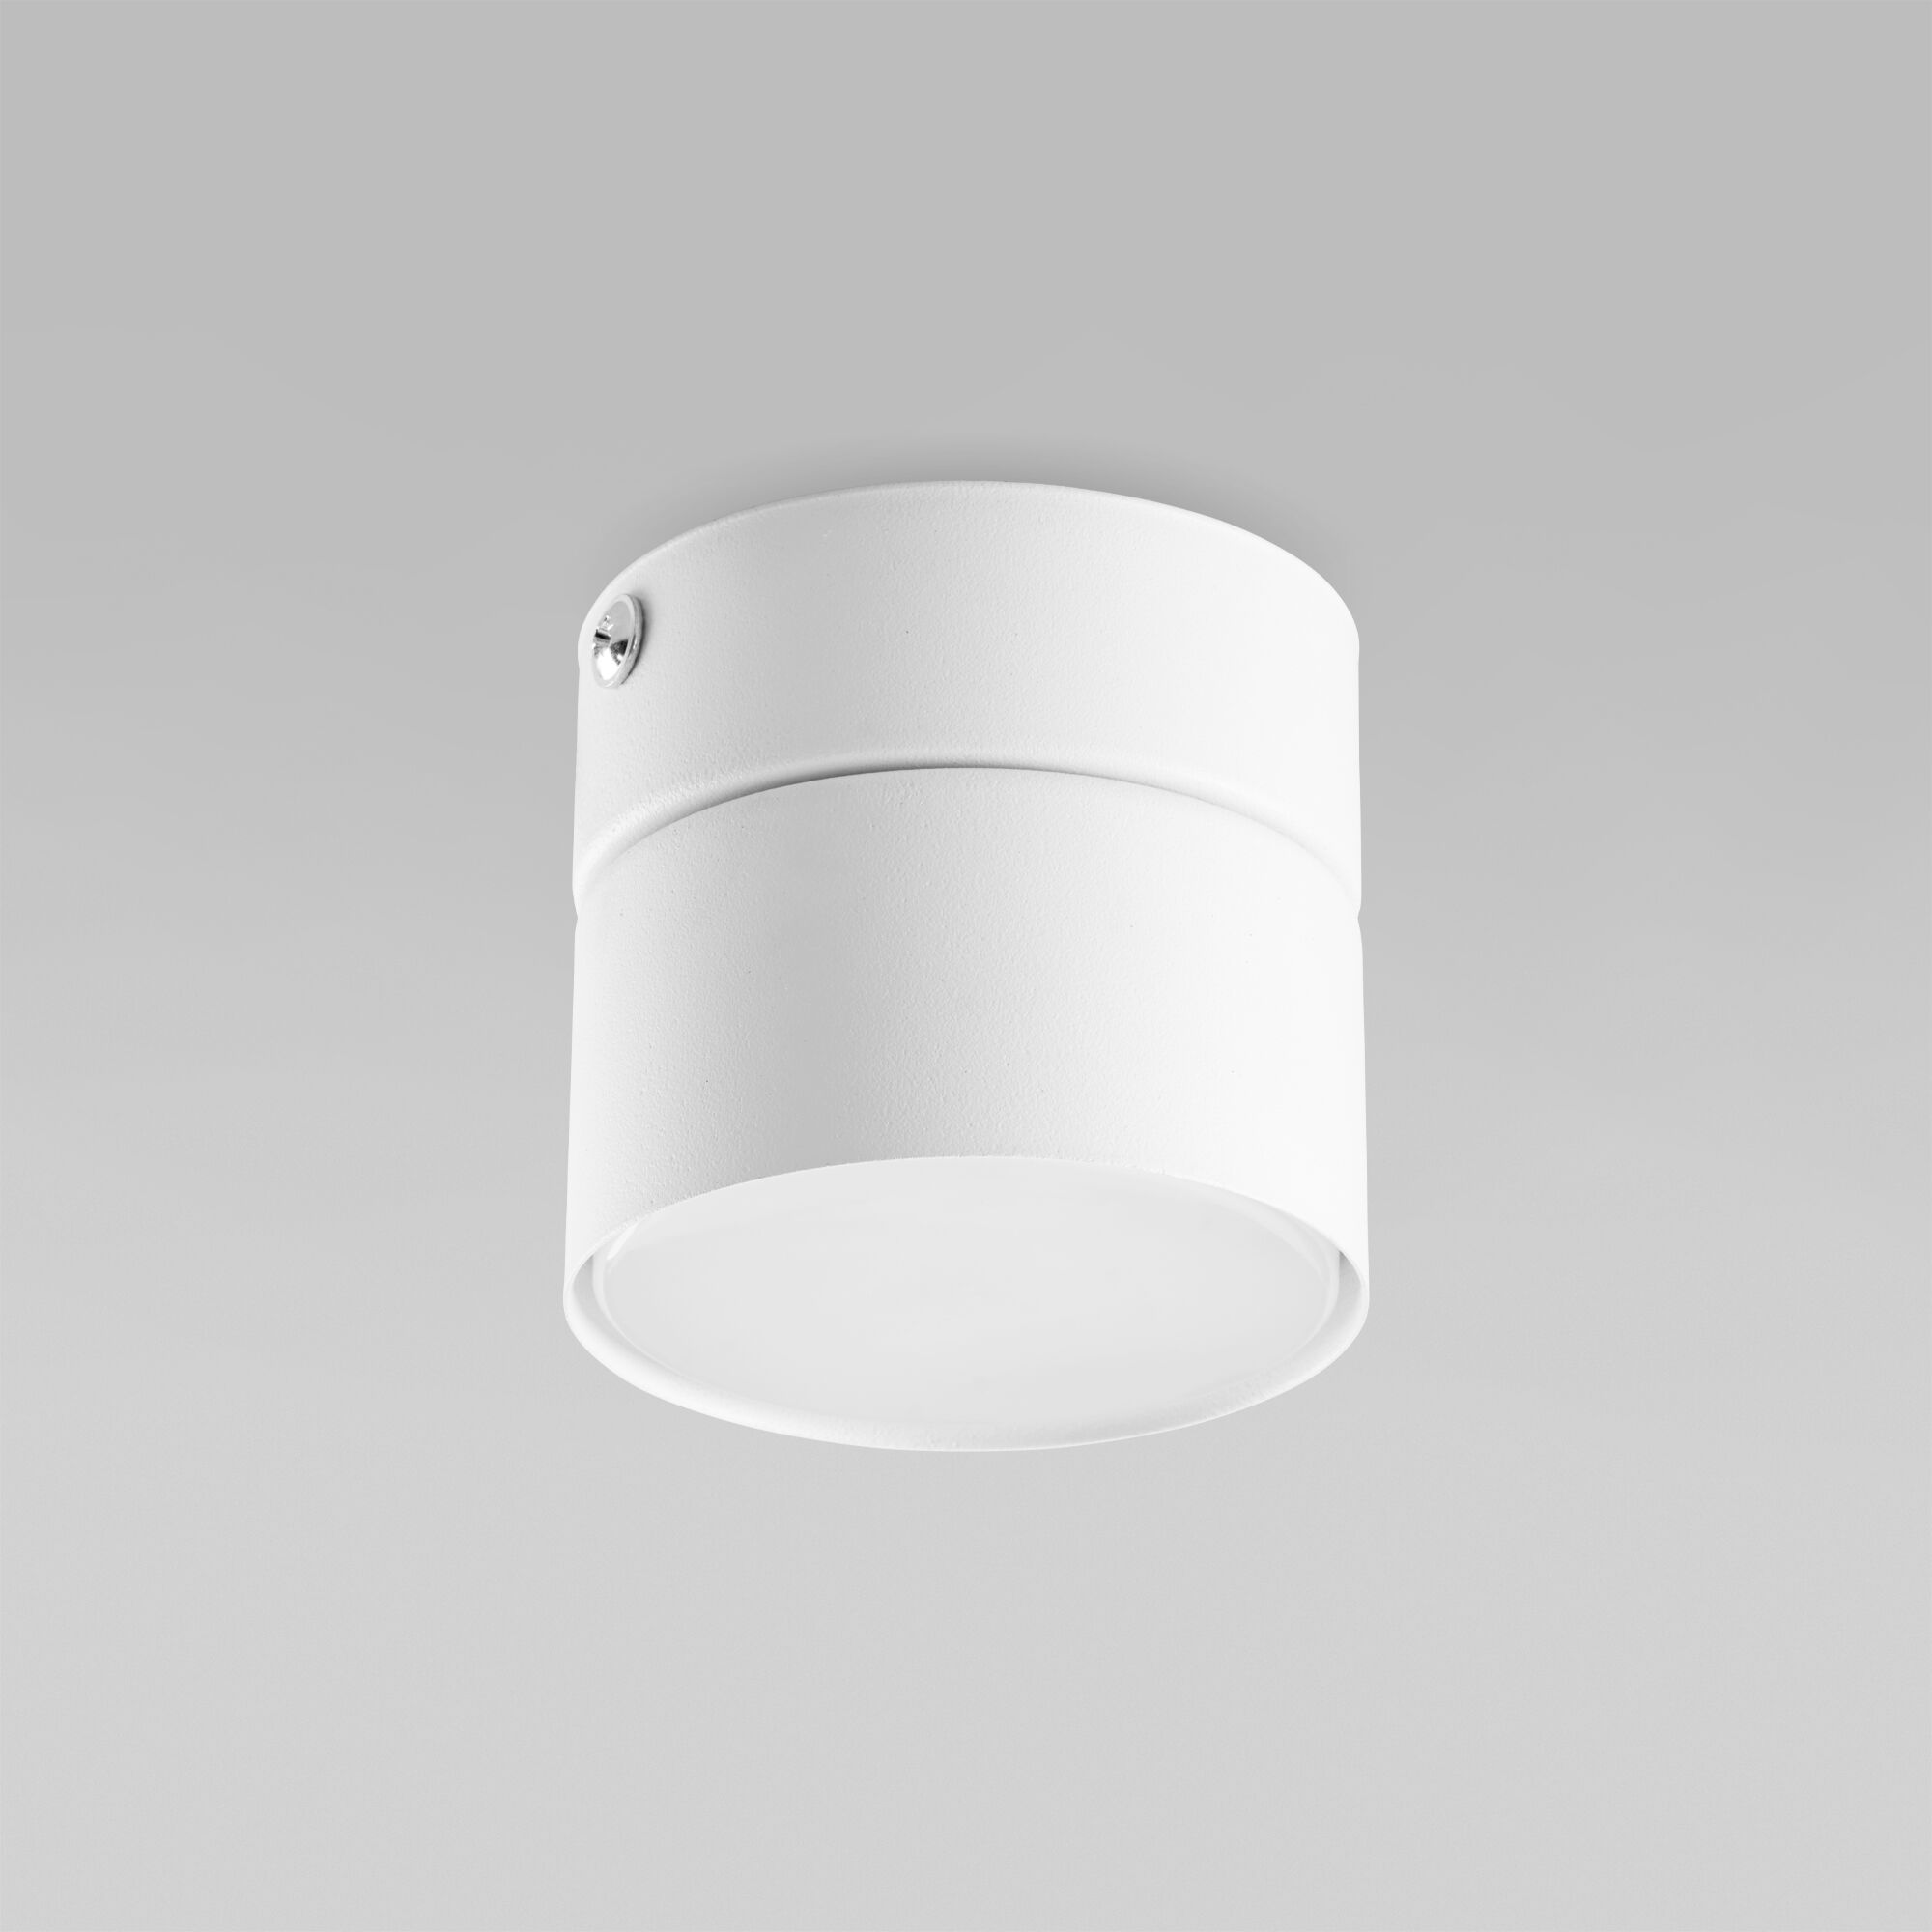 Потолочный светильник в стиле лофт TK Lighting Space 3390 Space White. Фото 1